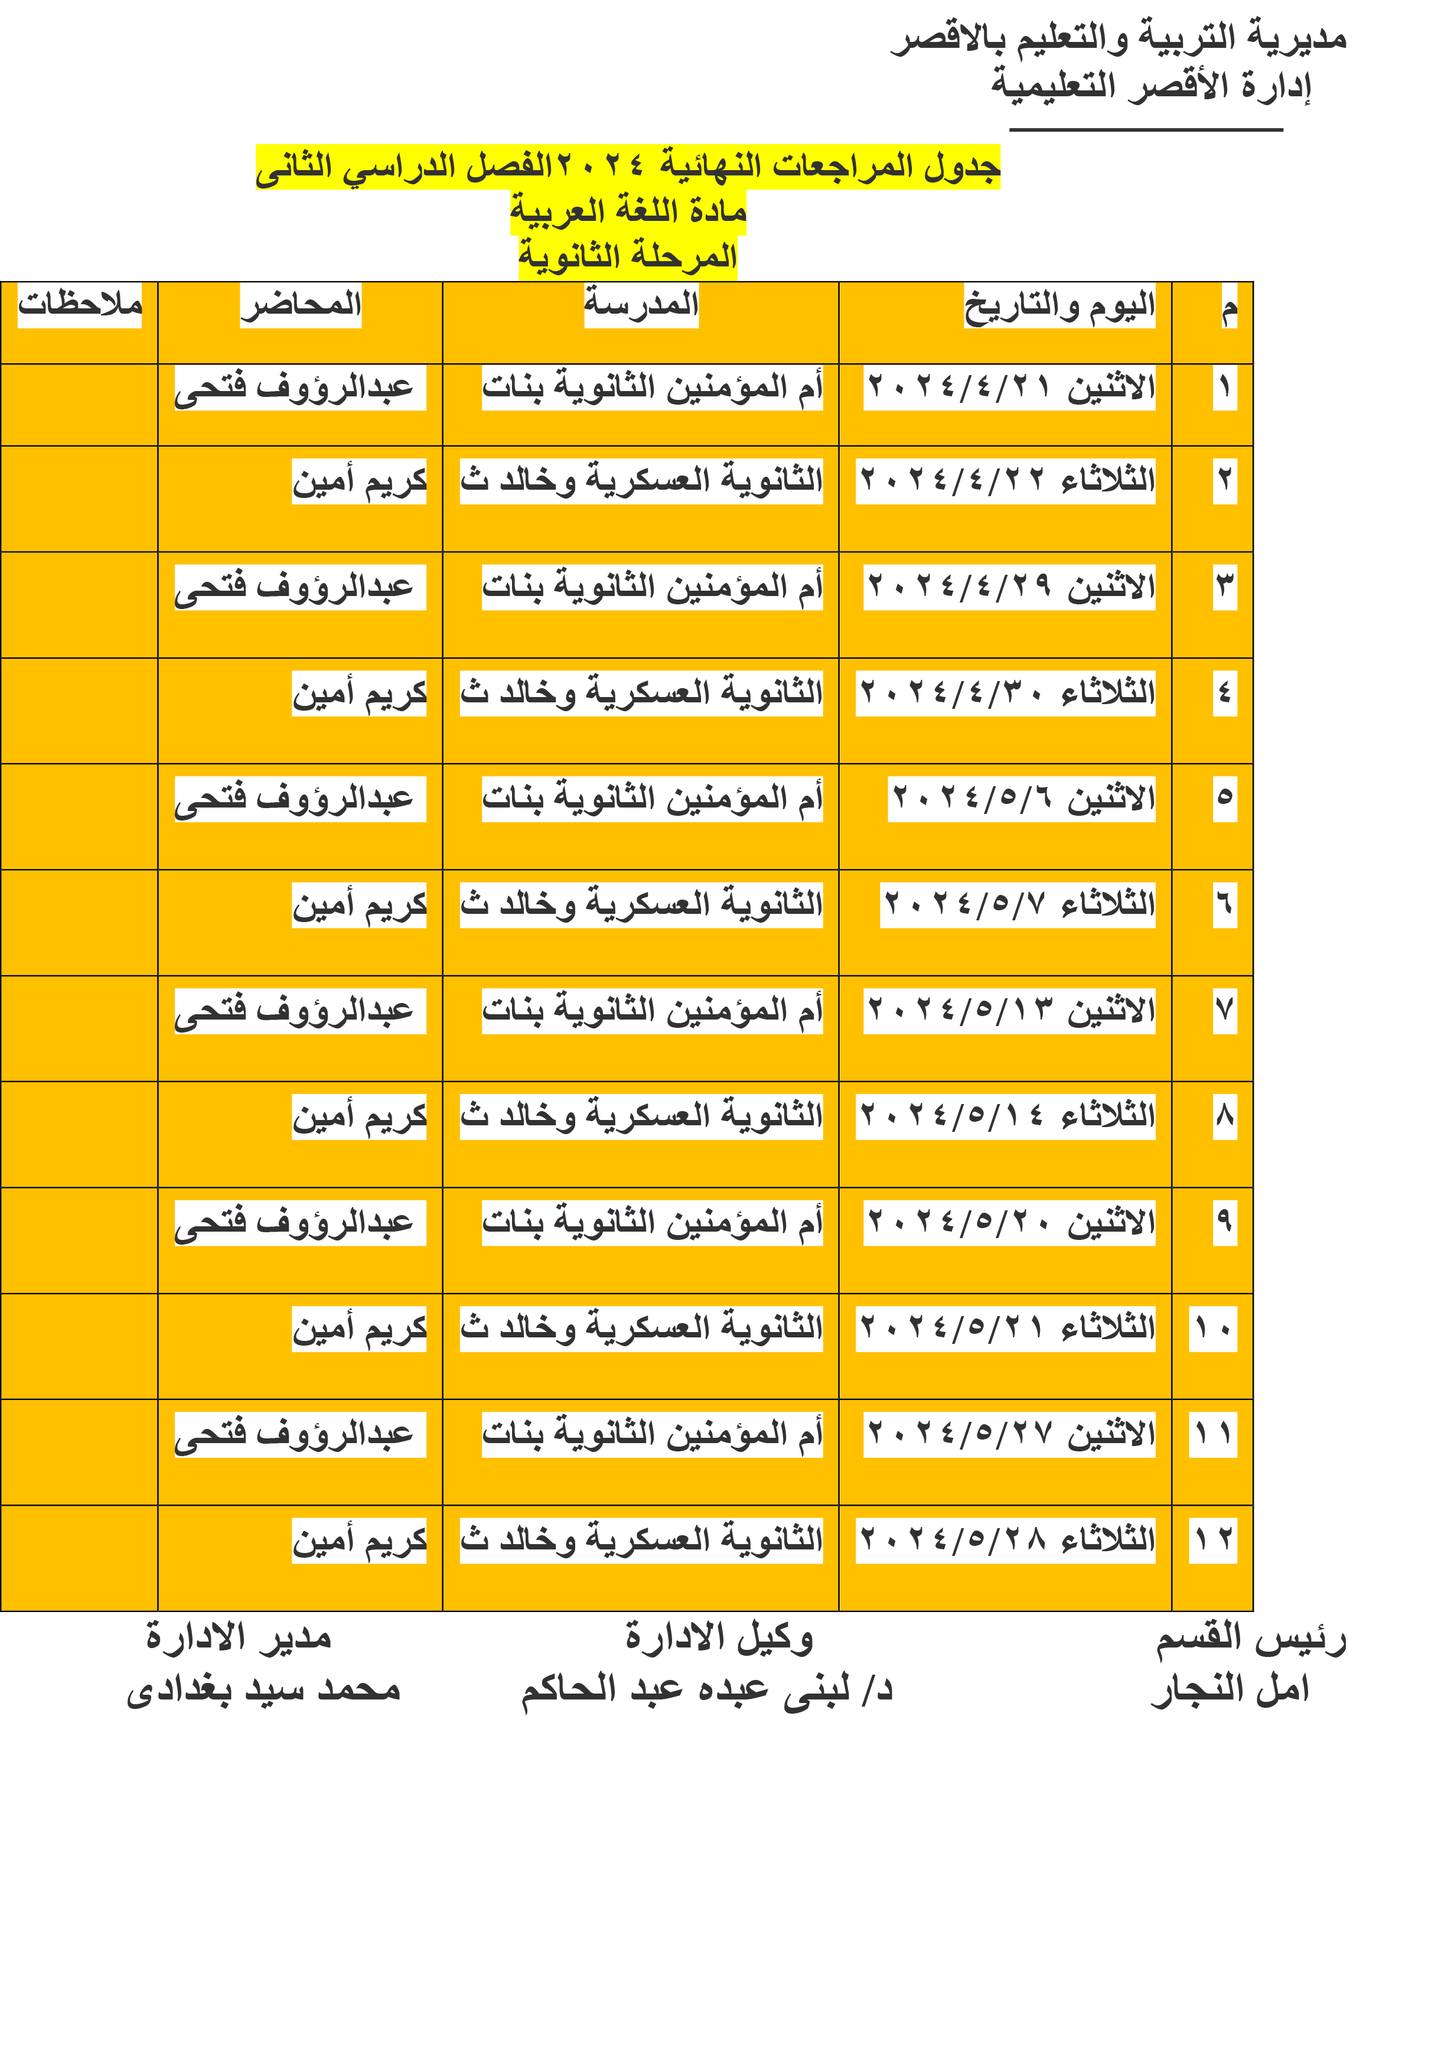 جدول مراجعات نهائية للثانوية العامة لمادة اللغة العربية